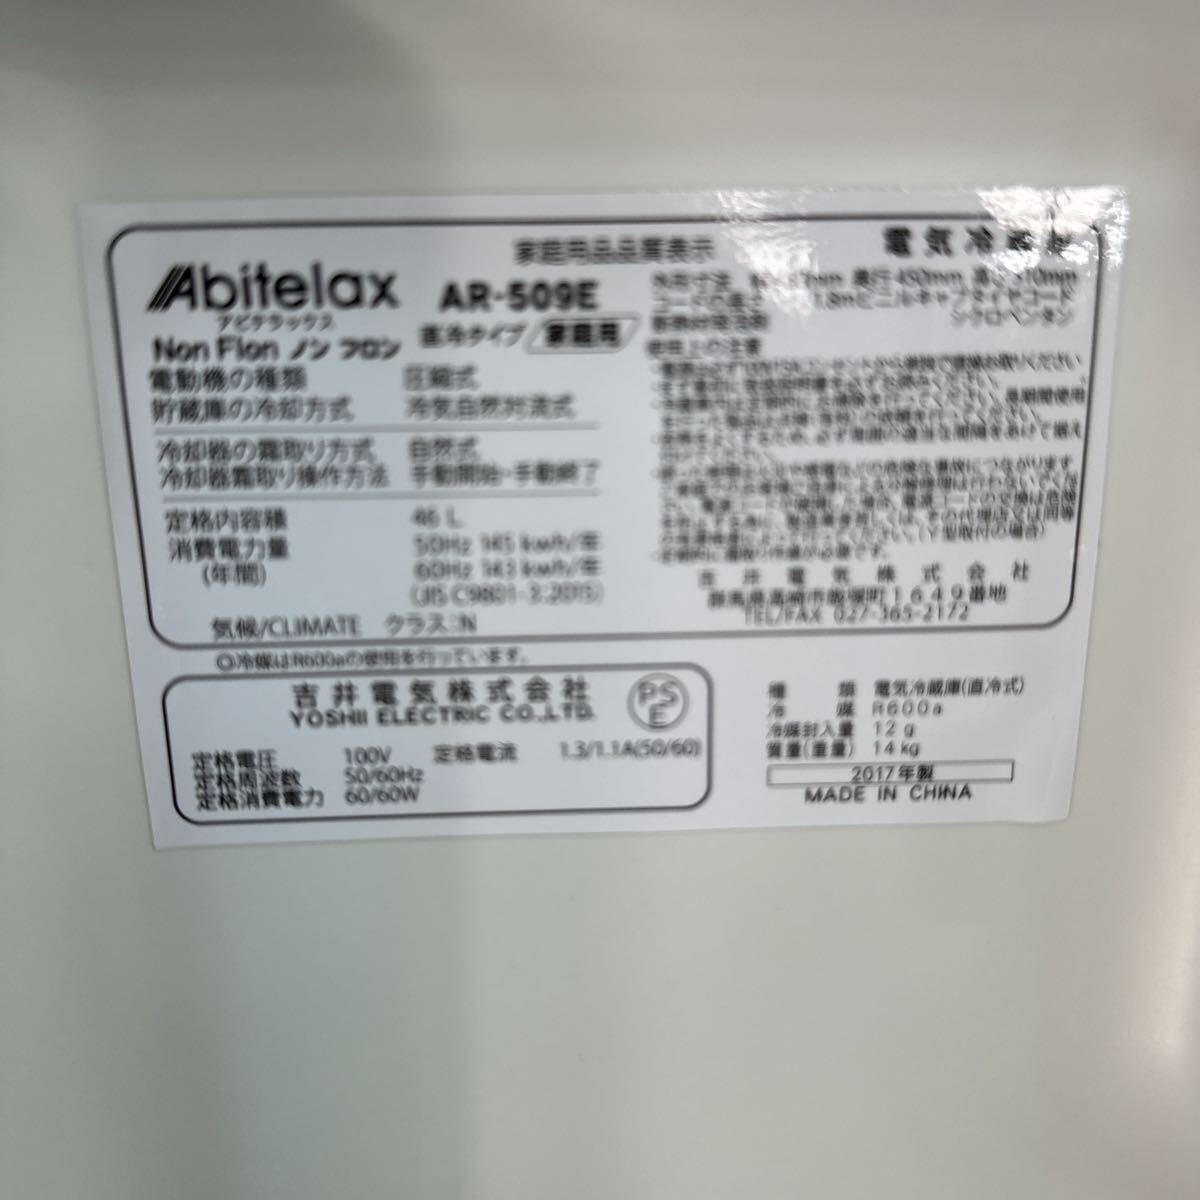 Abitelaxabite Lux 1 дверь рефрижератор 46L 2017 год производства non фреон рефрижератор AR-509E б/у 6040922